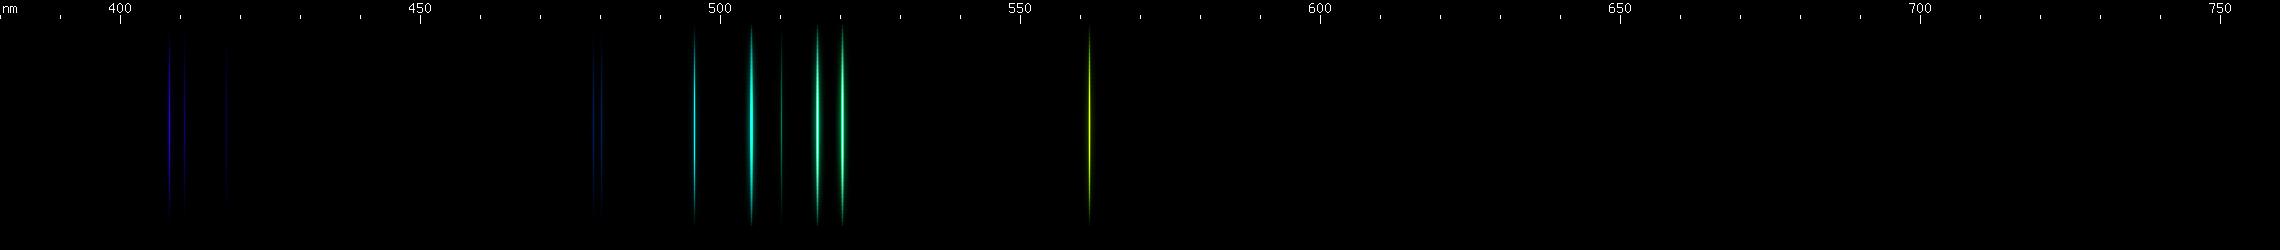 Spectral lines of Einsteinium.